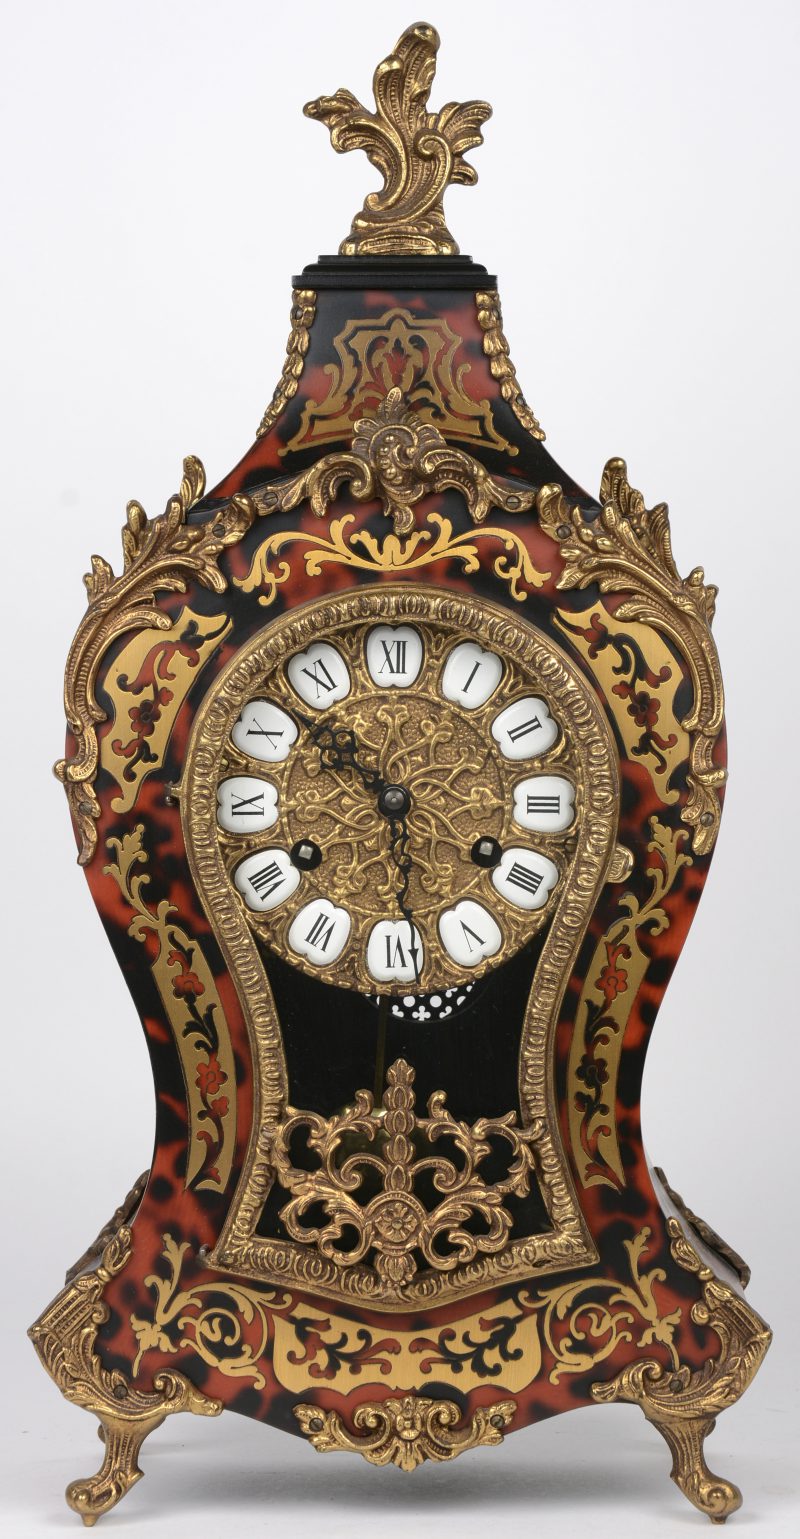 Pendule in Lodewijk XV-stijl naar het voorbeeld van Boulle. Zwarte Romeinse cijfers. Duits uurwerk. Met slinger en sleutel.